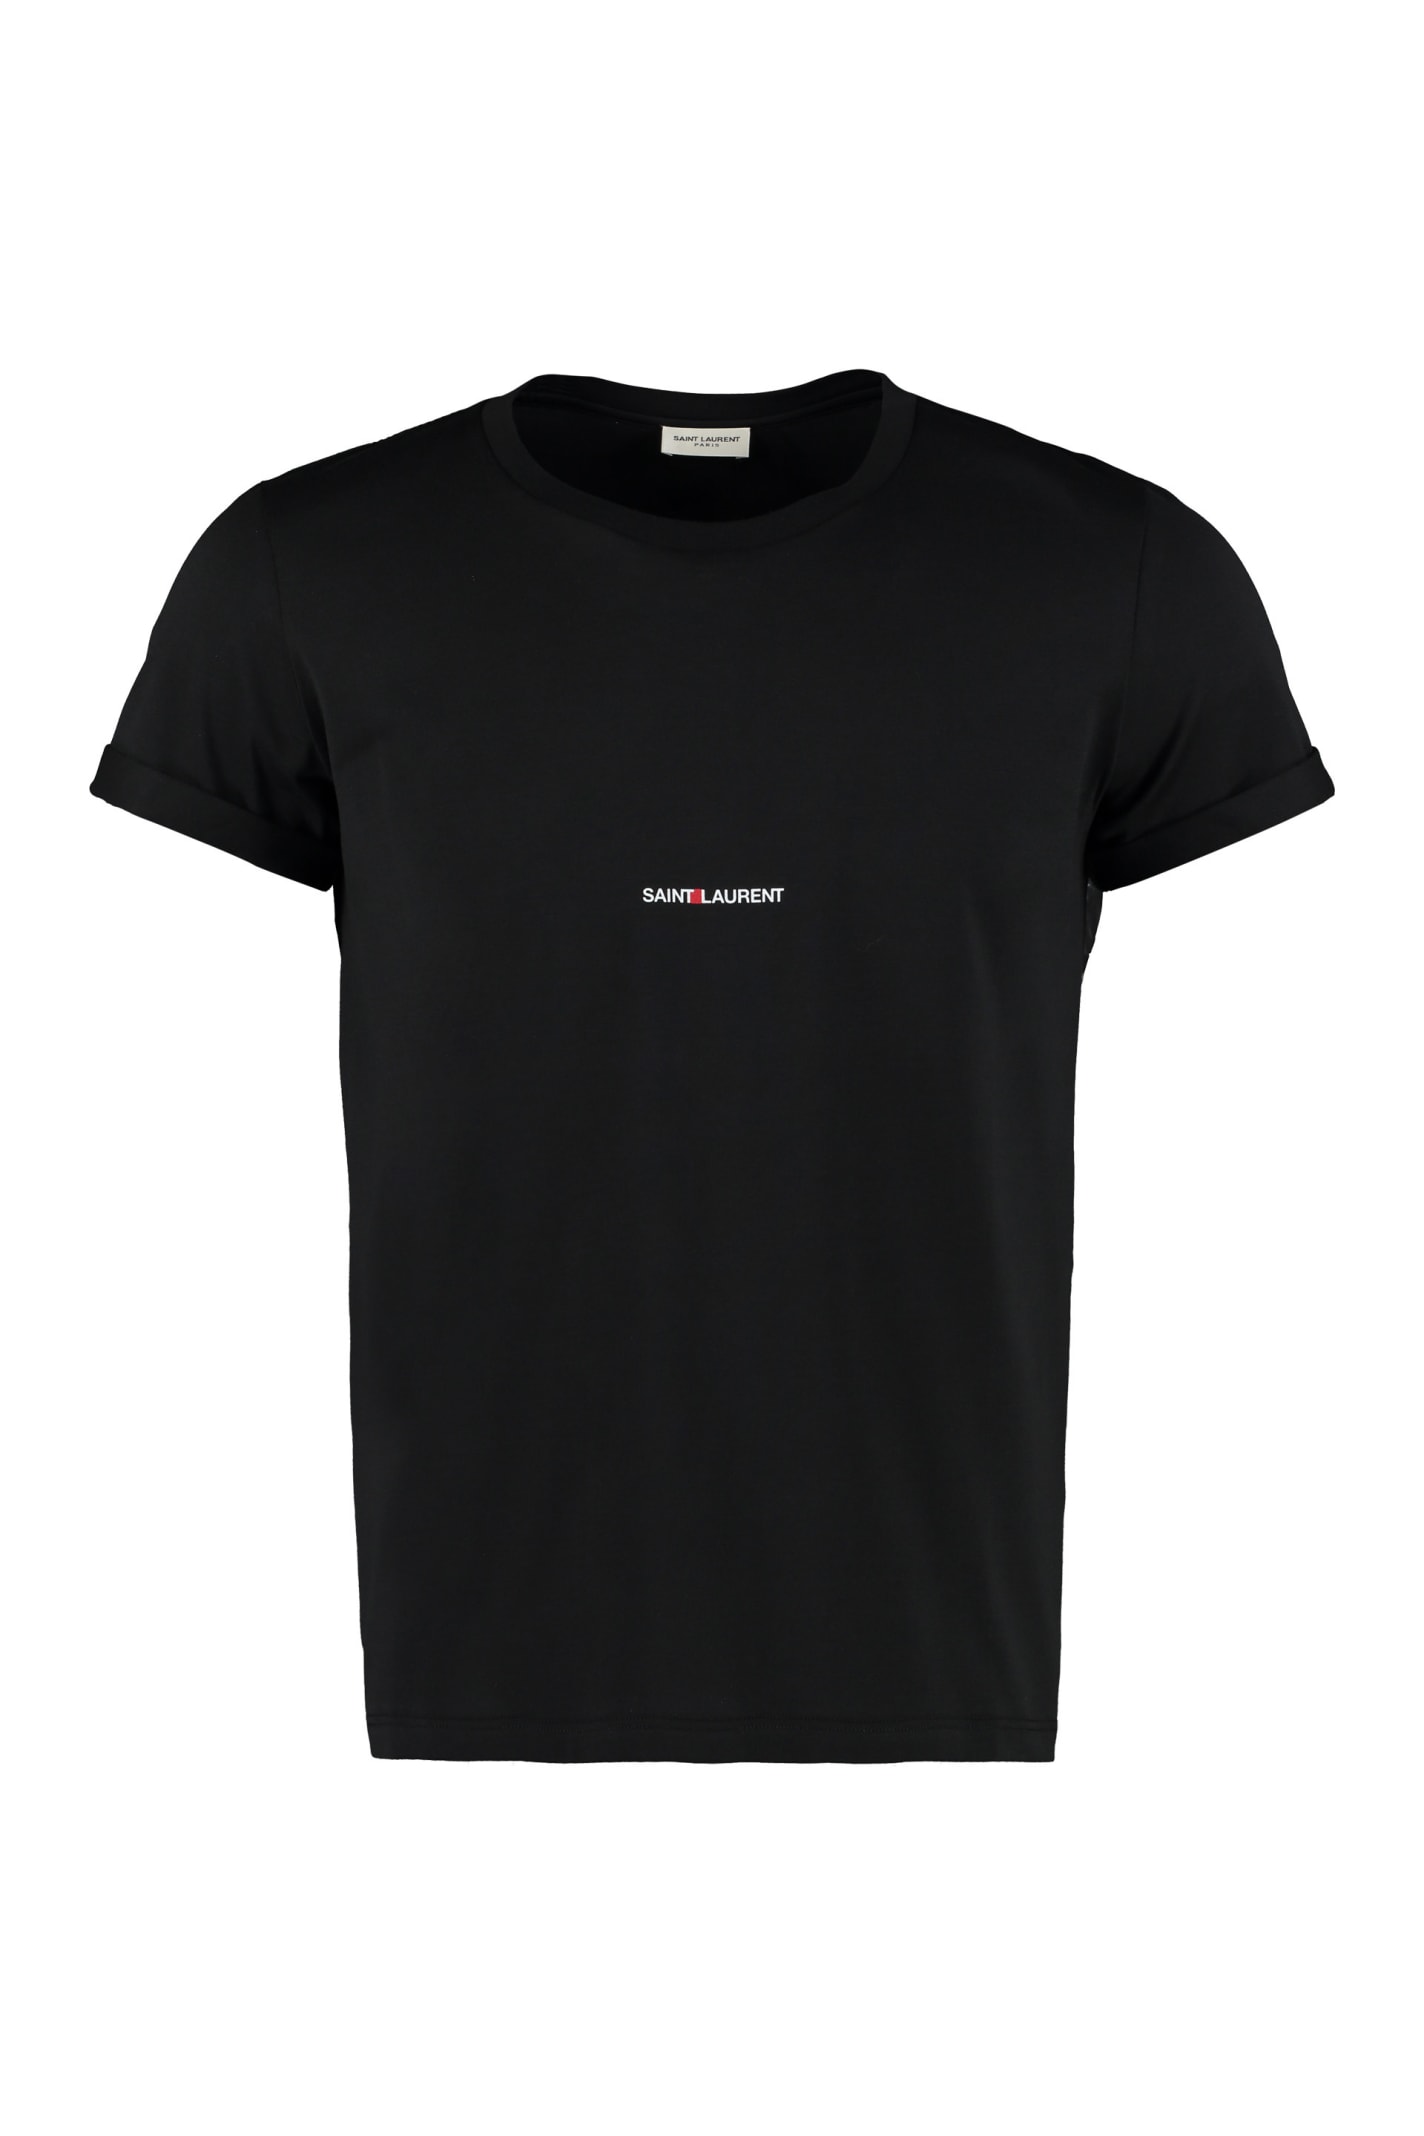 Saint Laurent Cotton T-shirt With Logo